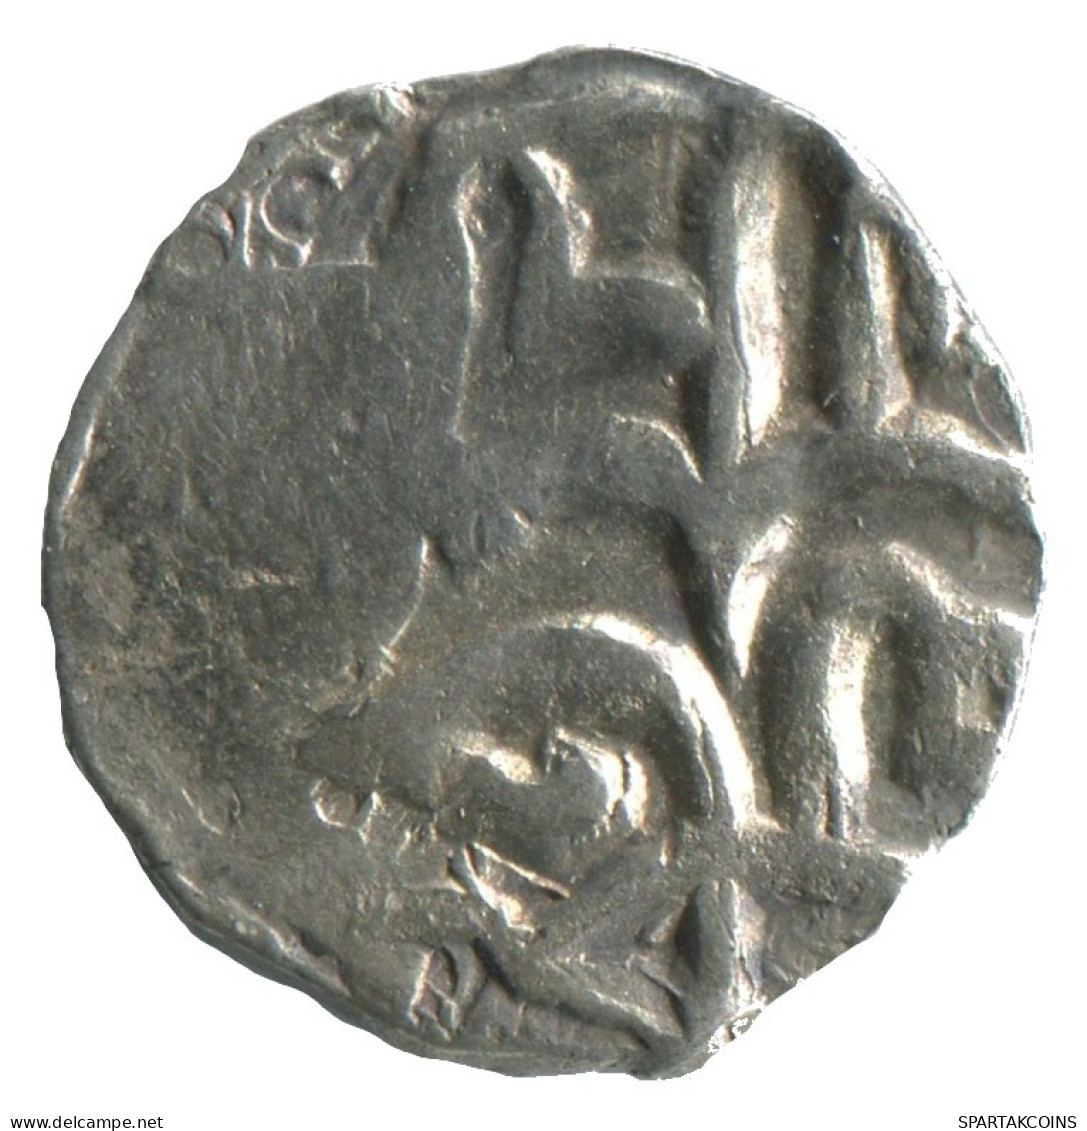 GOLDEN HORDE Silver Dirham Medieval Islamic Coin 1.3g/16mm #NNN2017.8.D.A - Islamiche